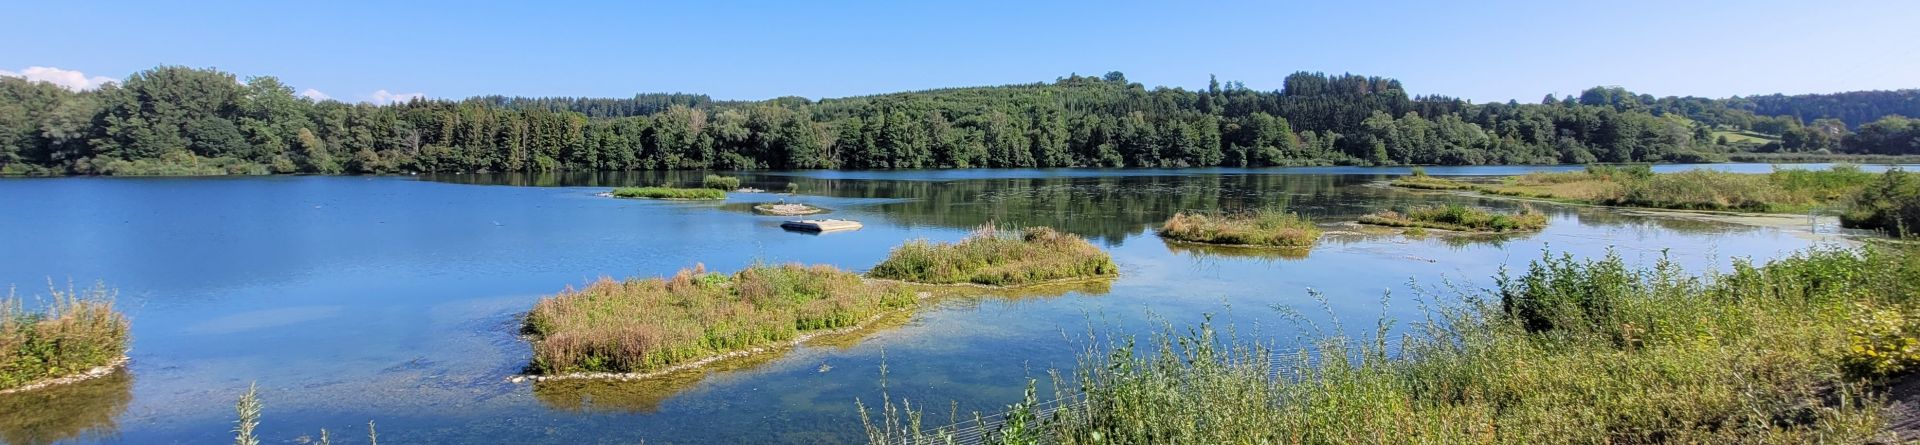 Ein renaturierter Baggersee mit kleinen Inseln für Vögel und Tiere. 